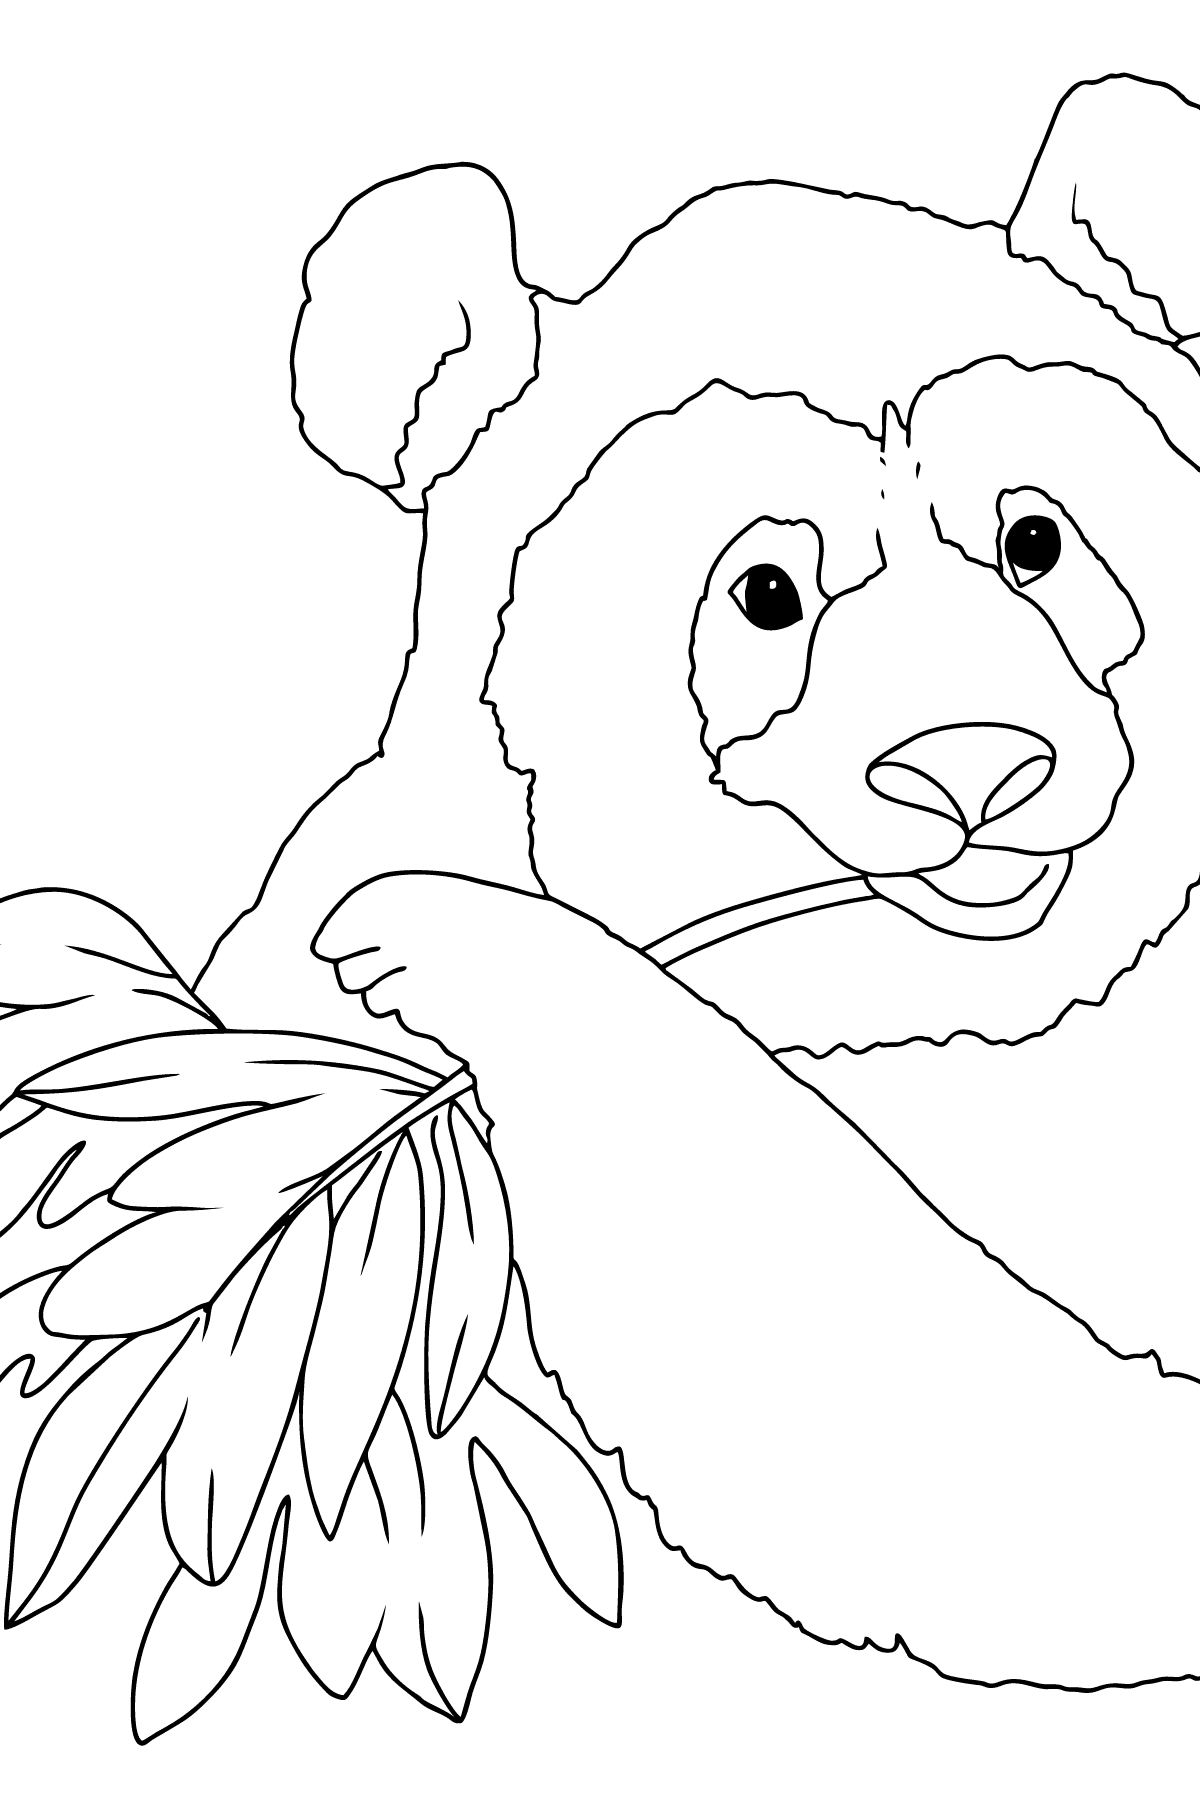 Panda fofo para colorir - Imagens para Colorir para Crianças